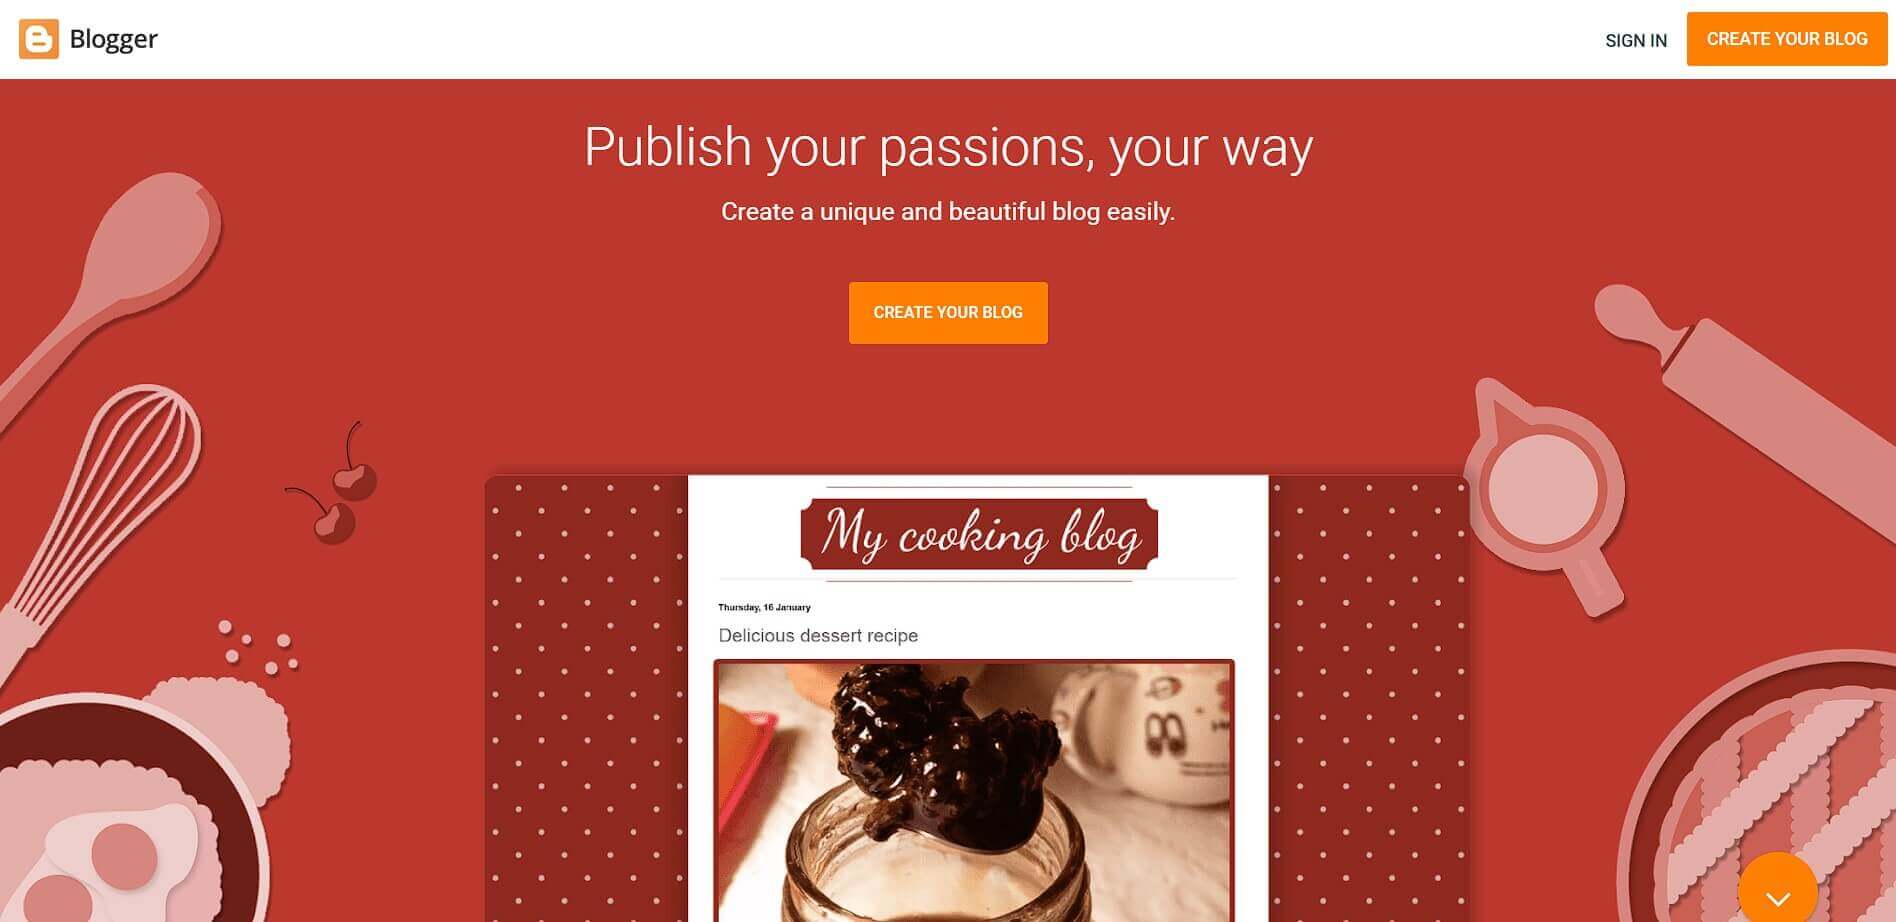 blogger blogging platform